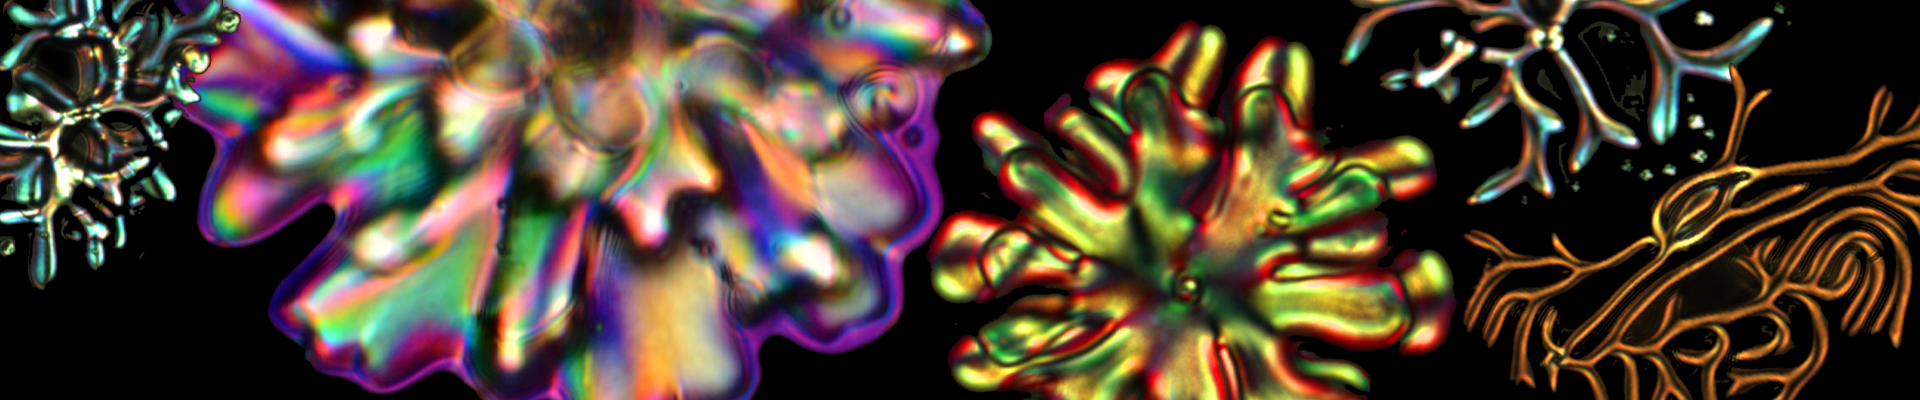 nematic liquid crystal drops image